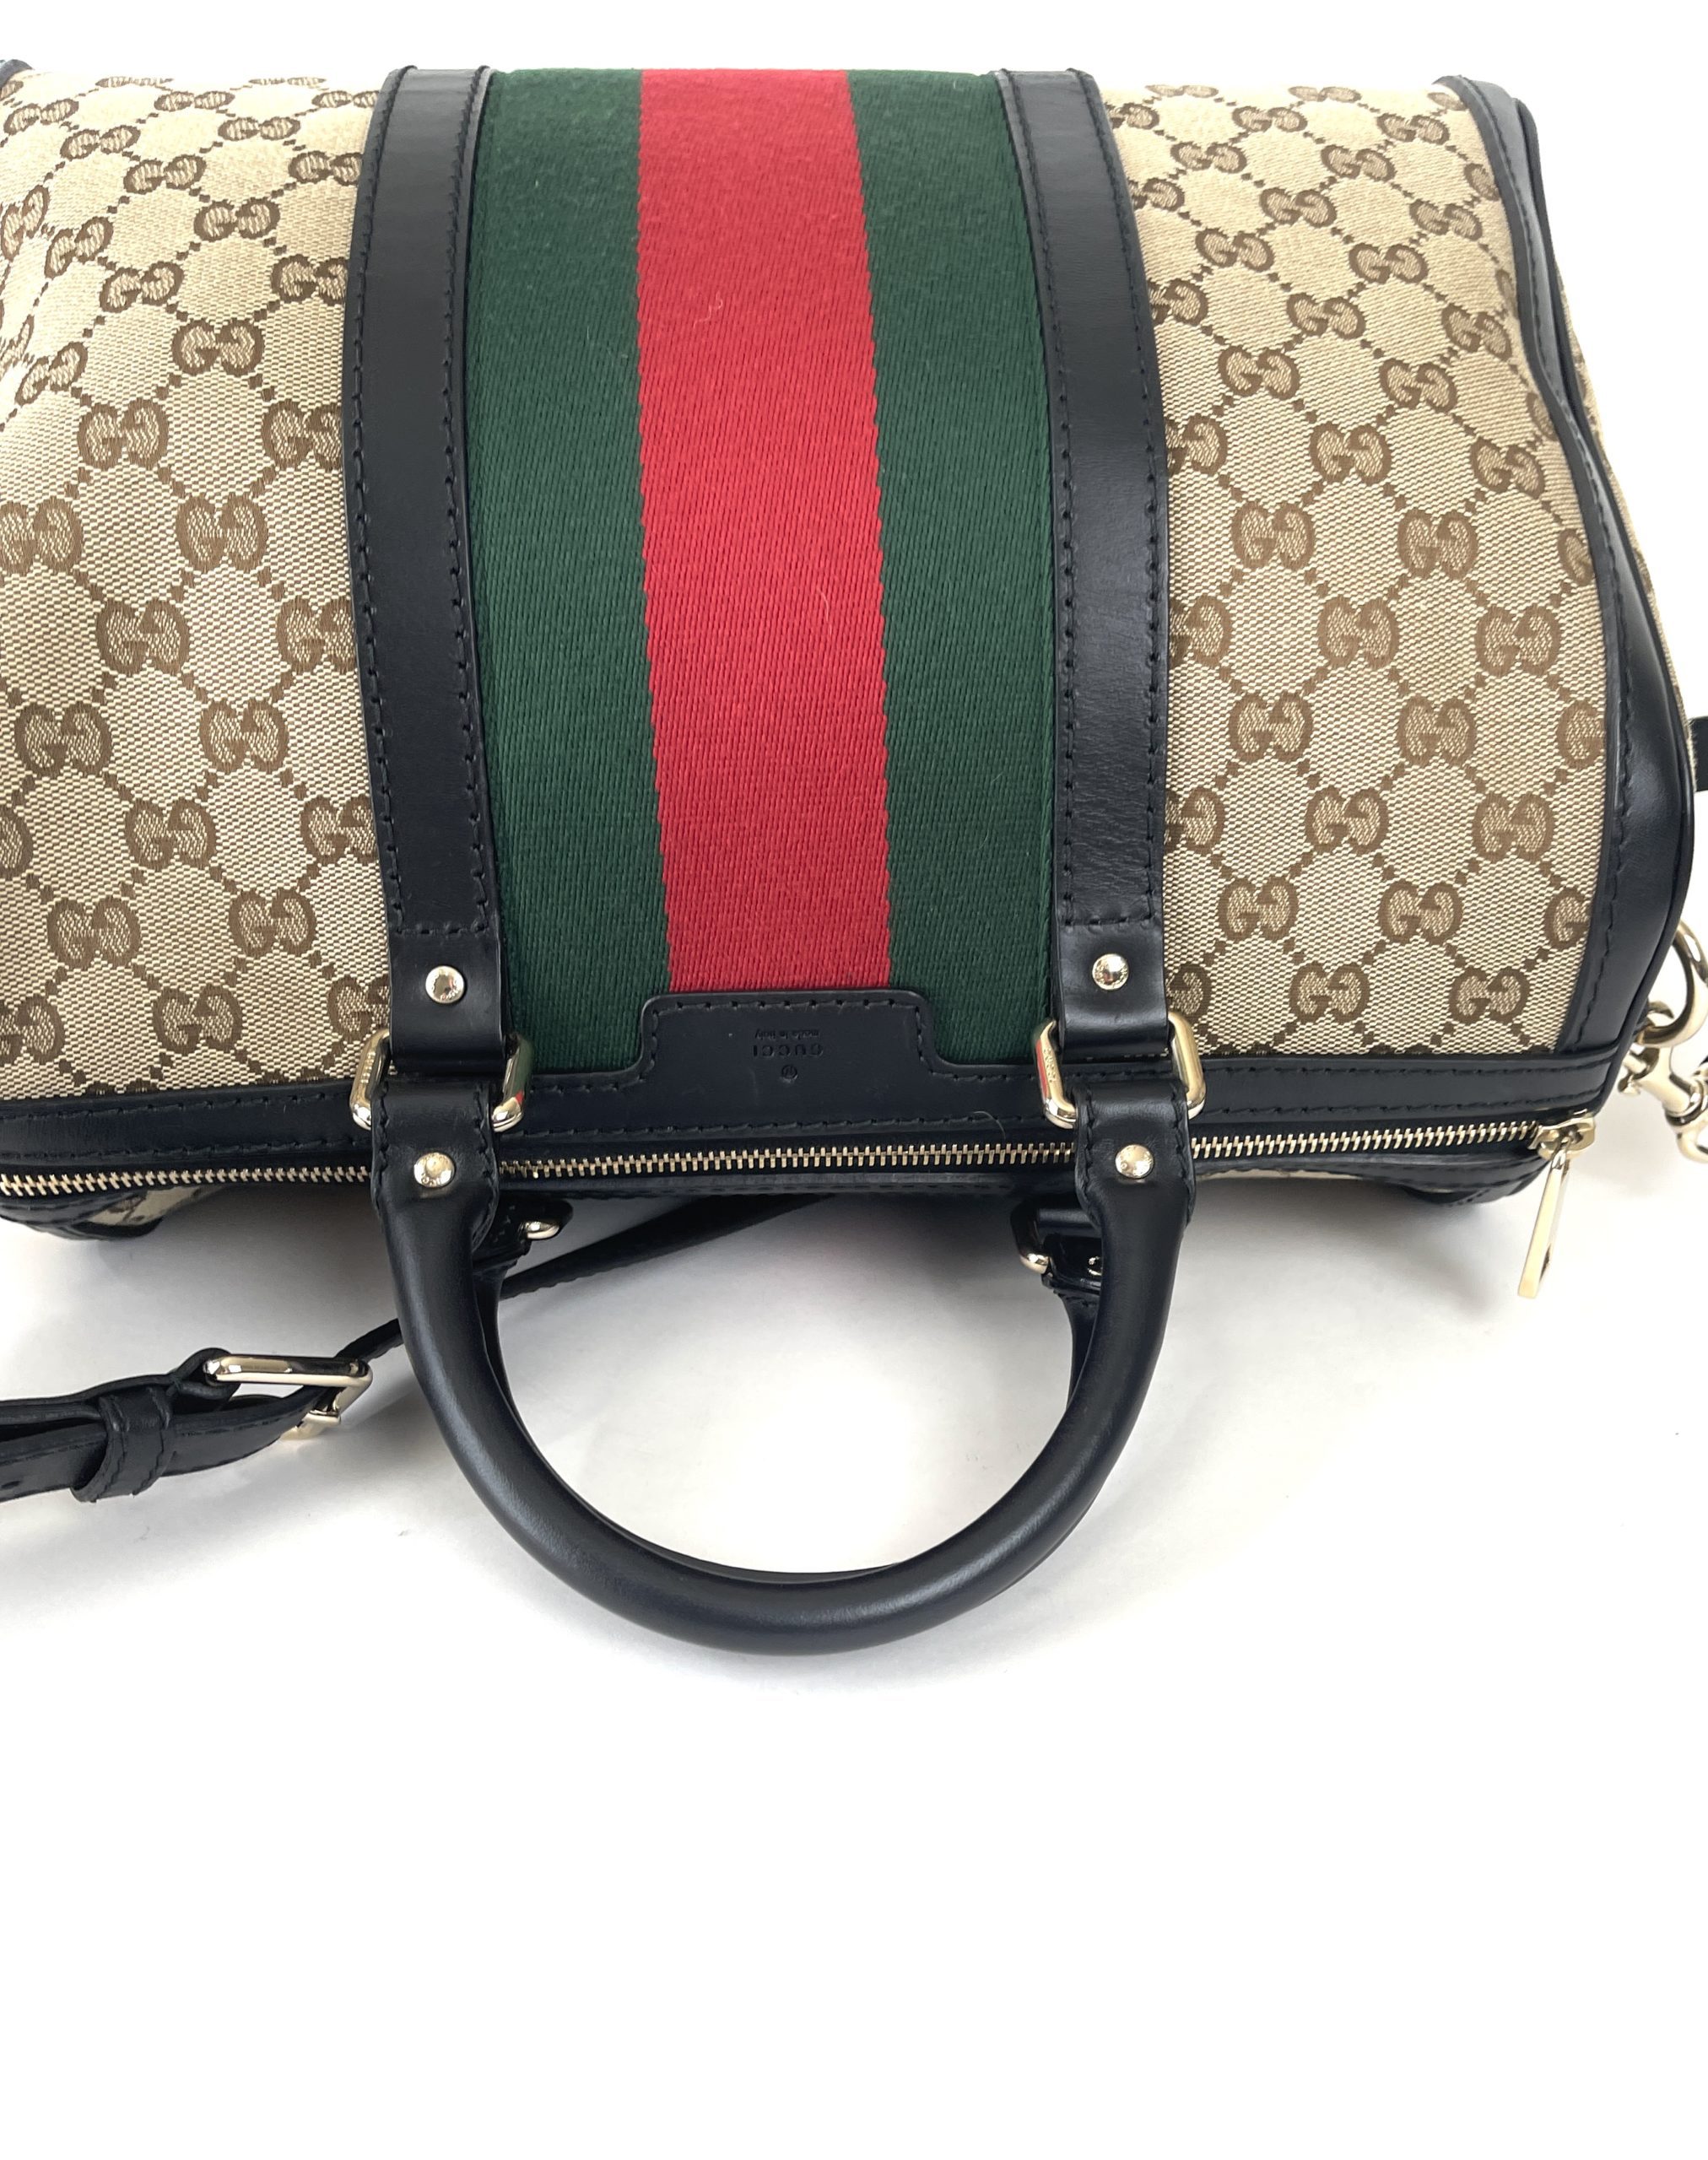 Gucci, Bags, Authentic Mini Gucci Boston Bag